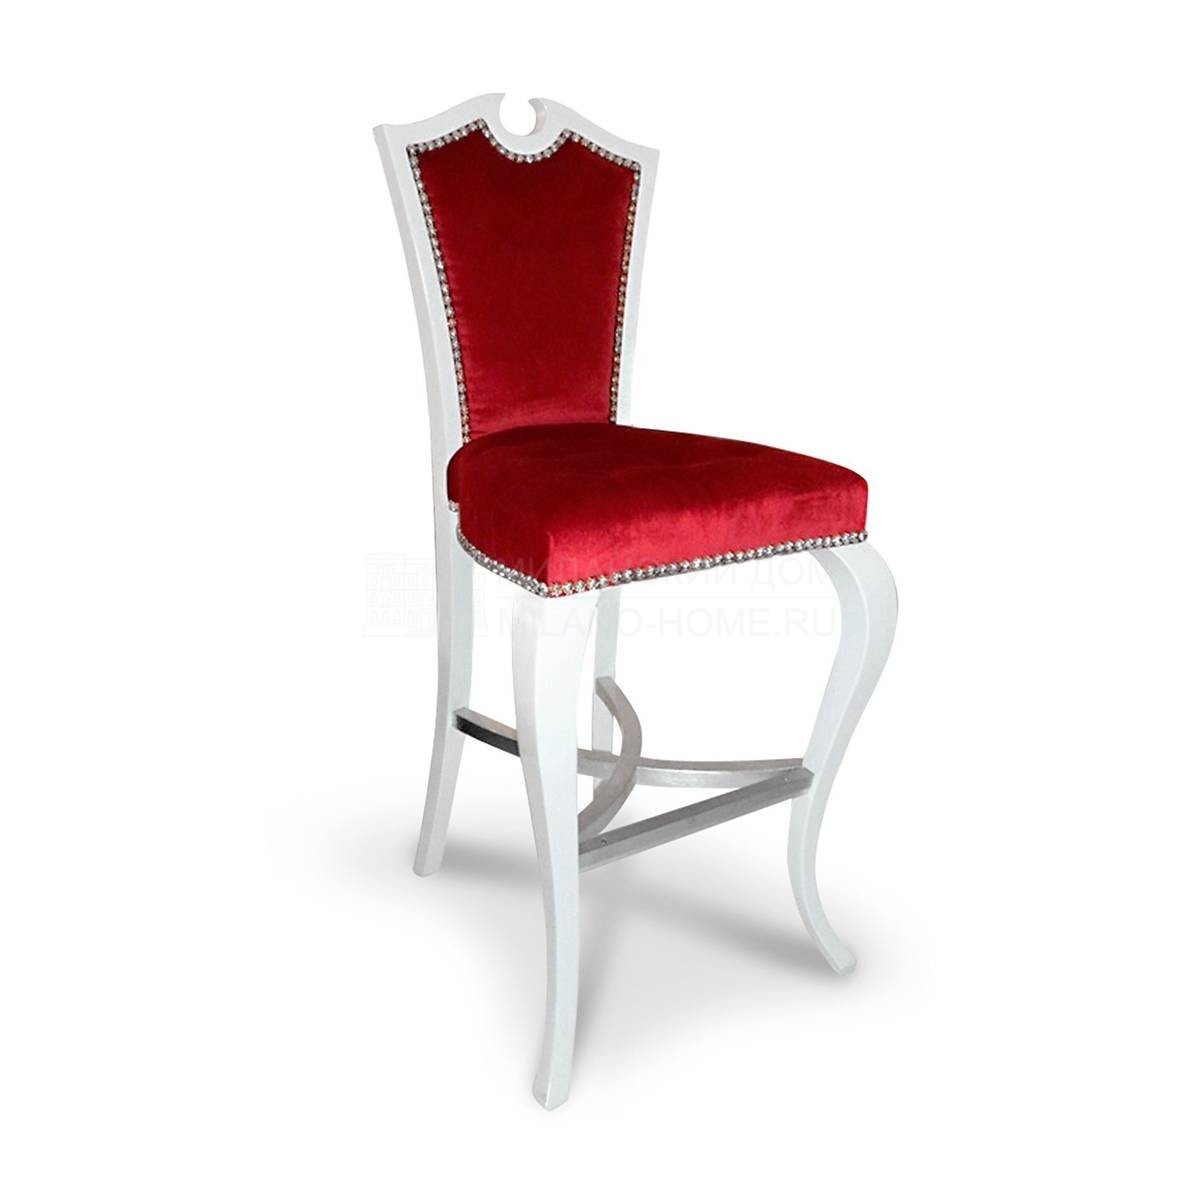 Барный стул Eclectica/S531 из Италии фабрики FRANCESCO MOLON